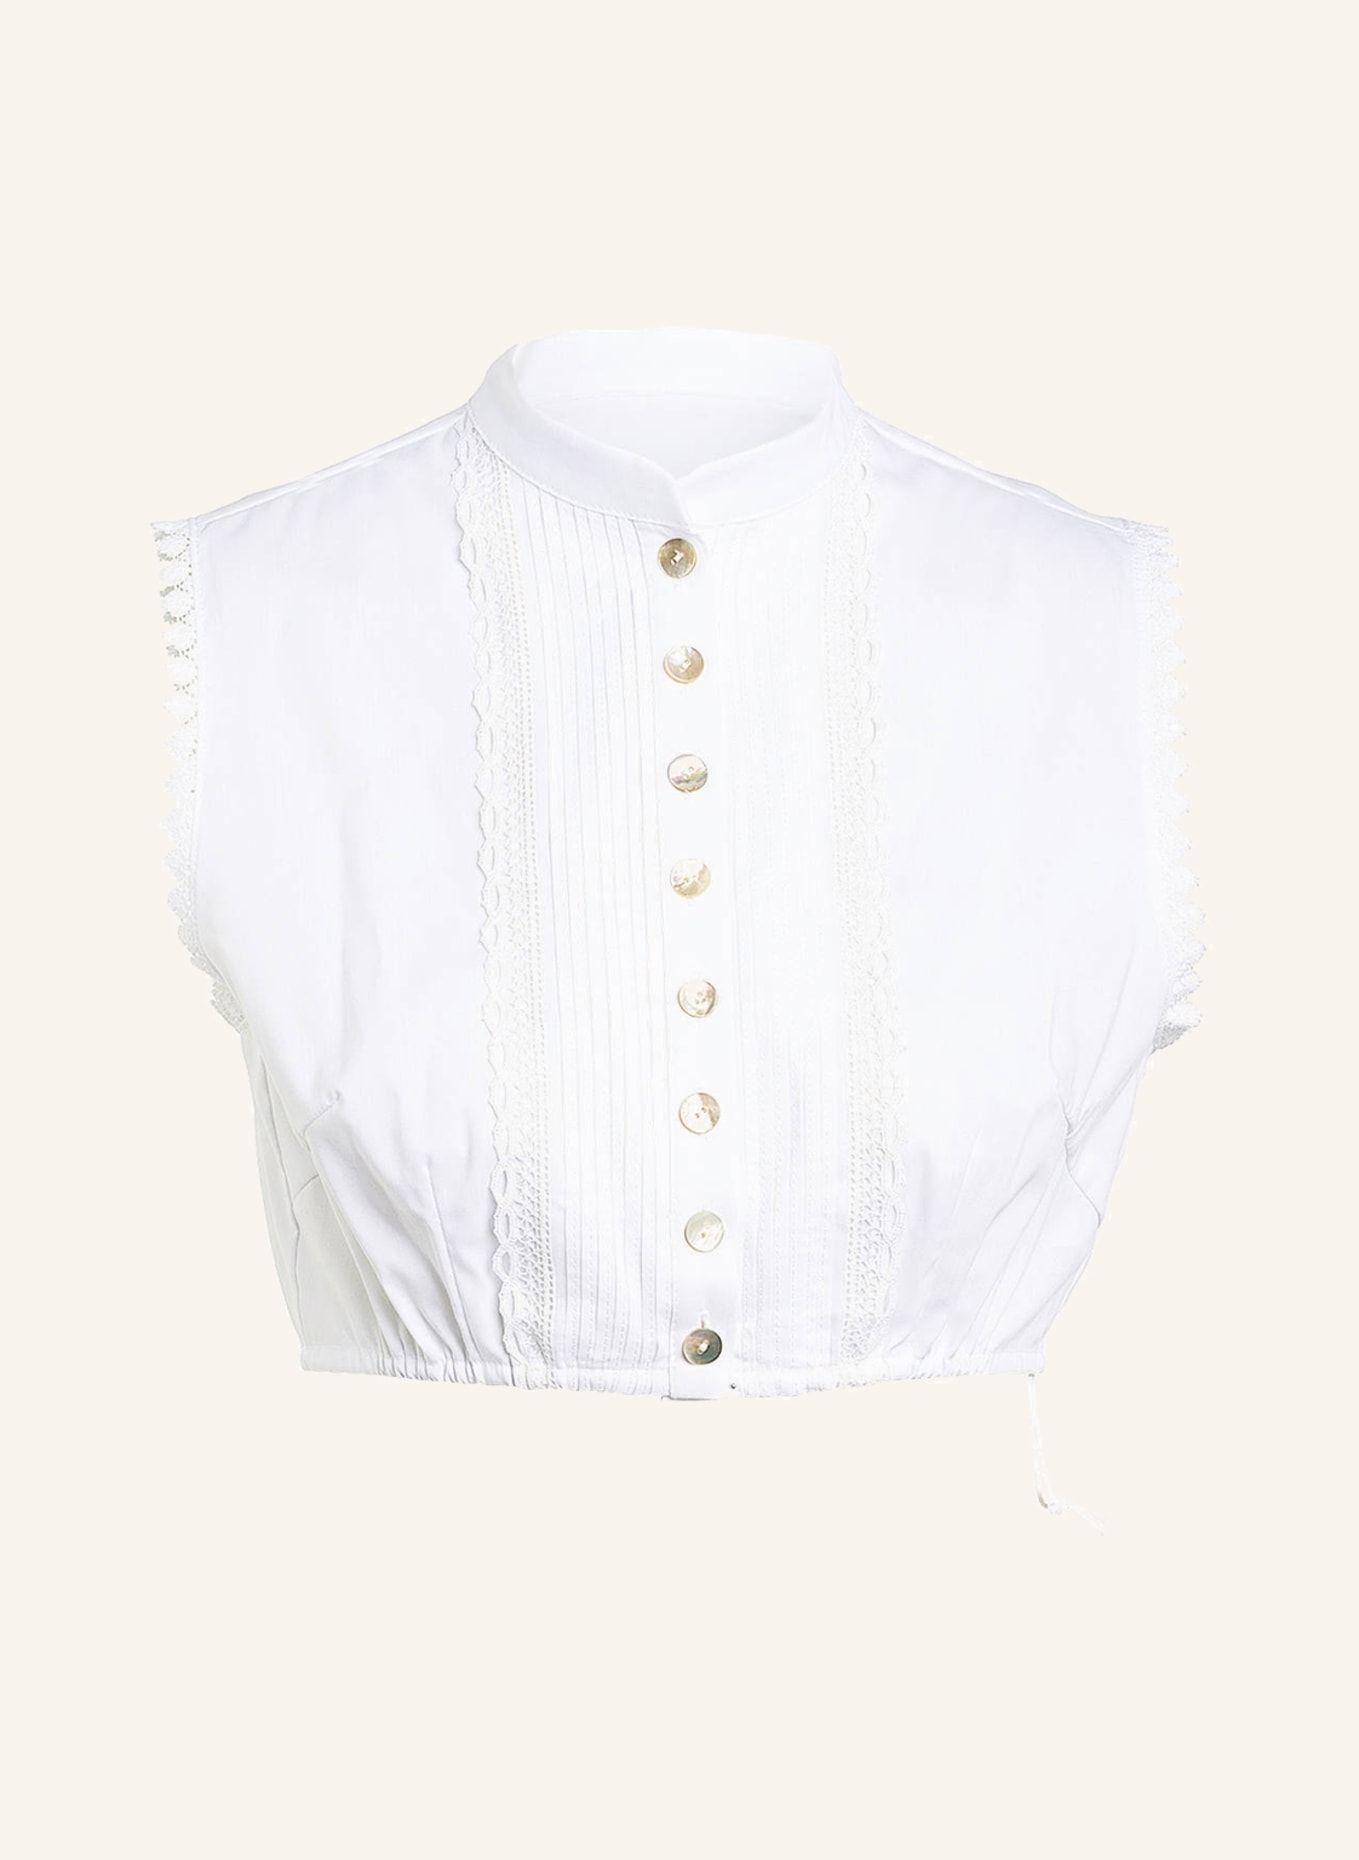 SPORTALM Dirndl blouse with lace trim, Color: WHITE (Image 1)